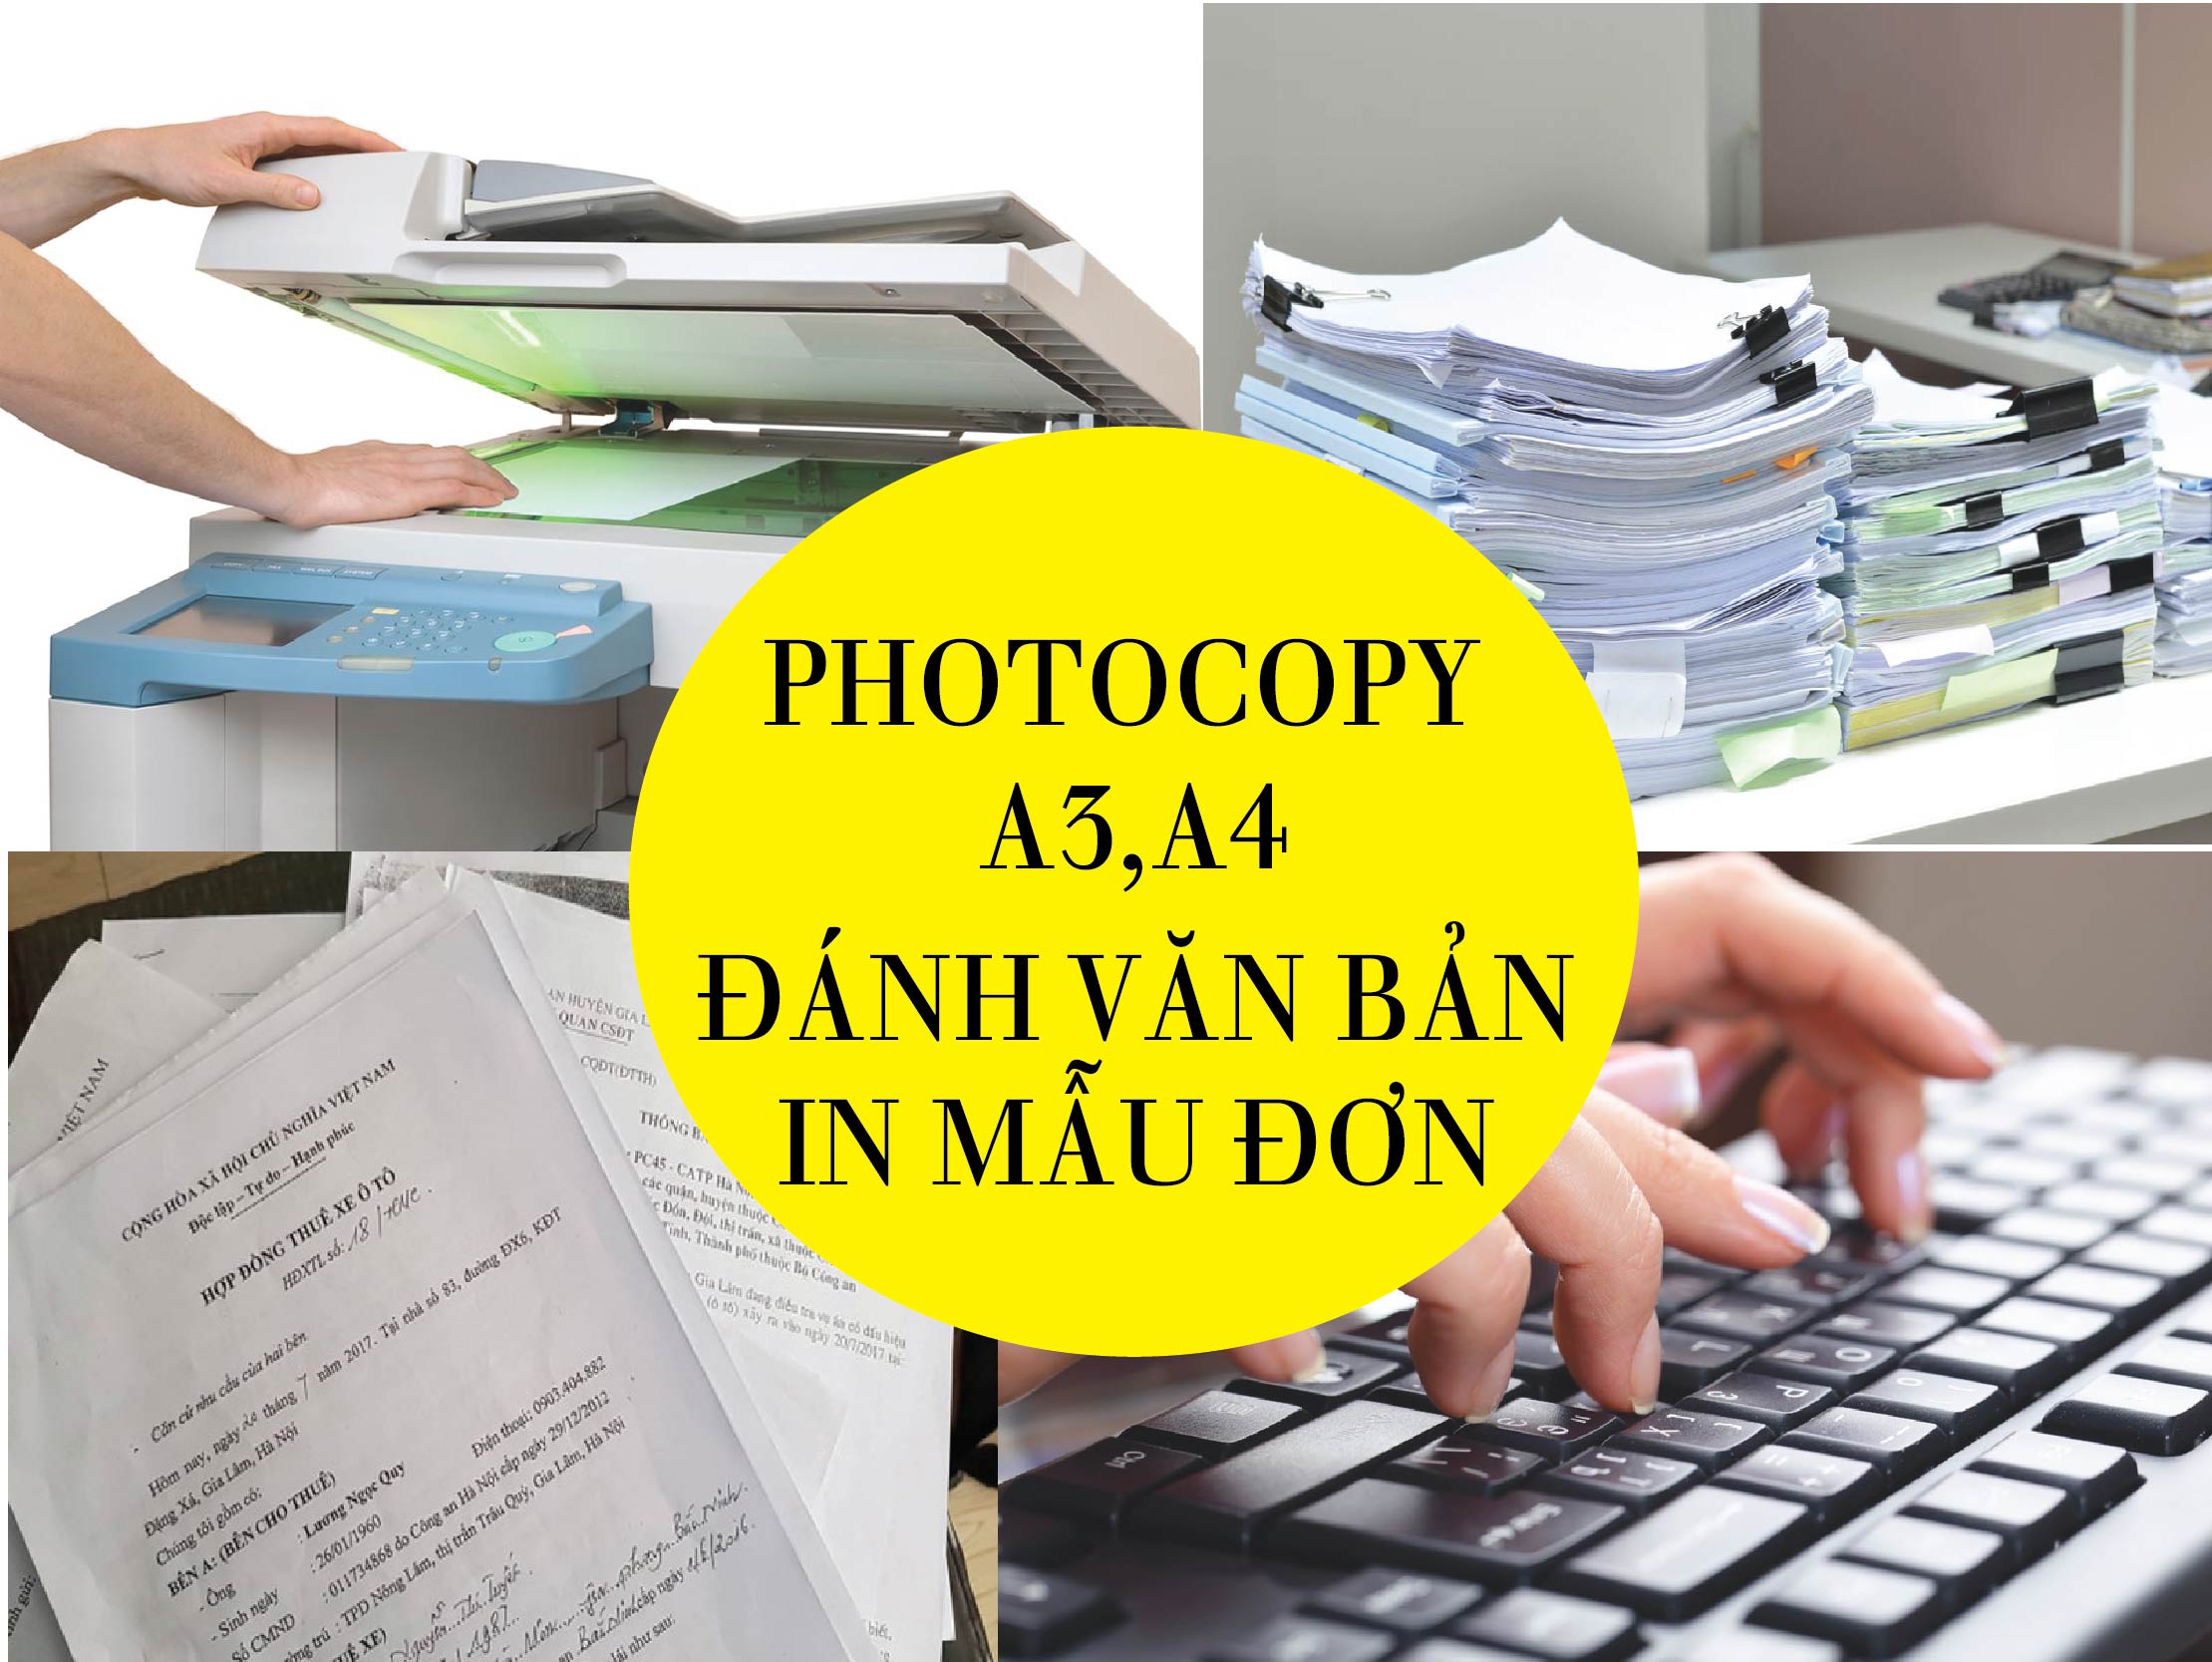 Photocopy - In Tài Liệu - Đánh Văn Bản